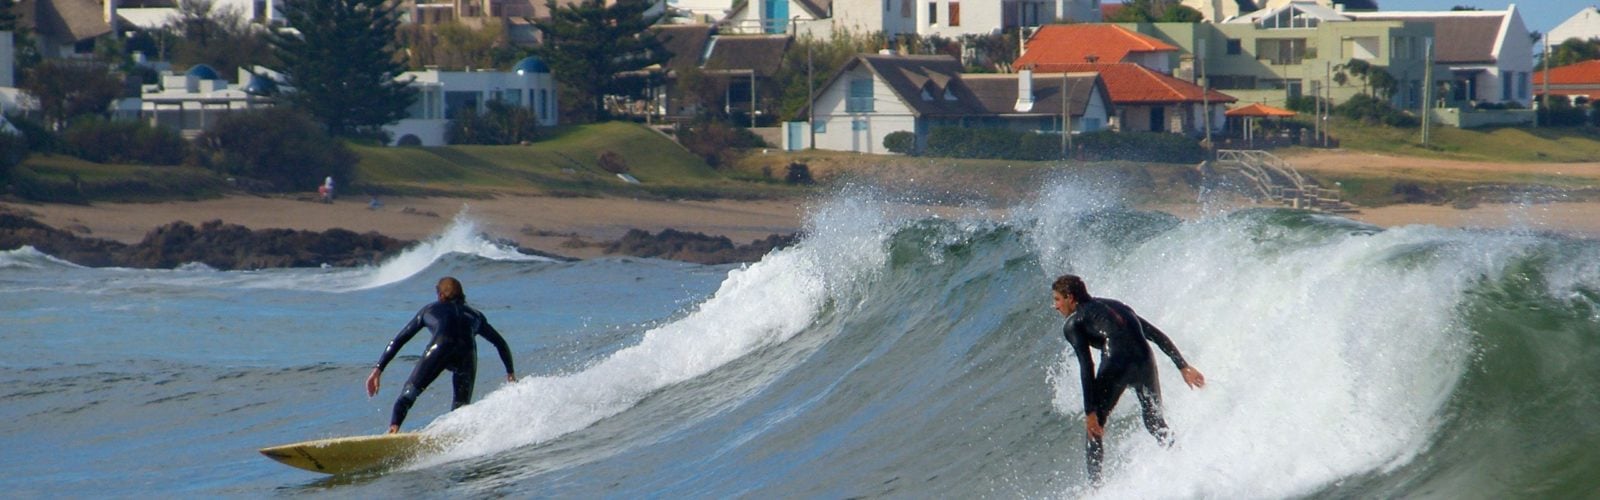 Surfing, Punta del Este, Uruguay